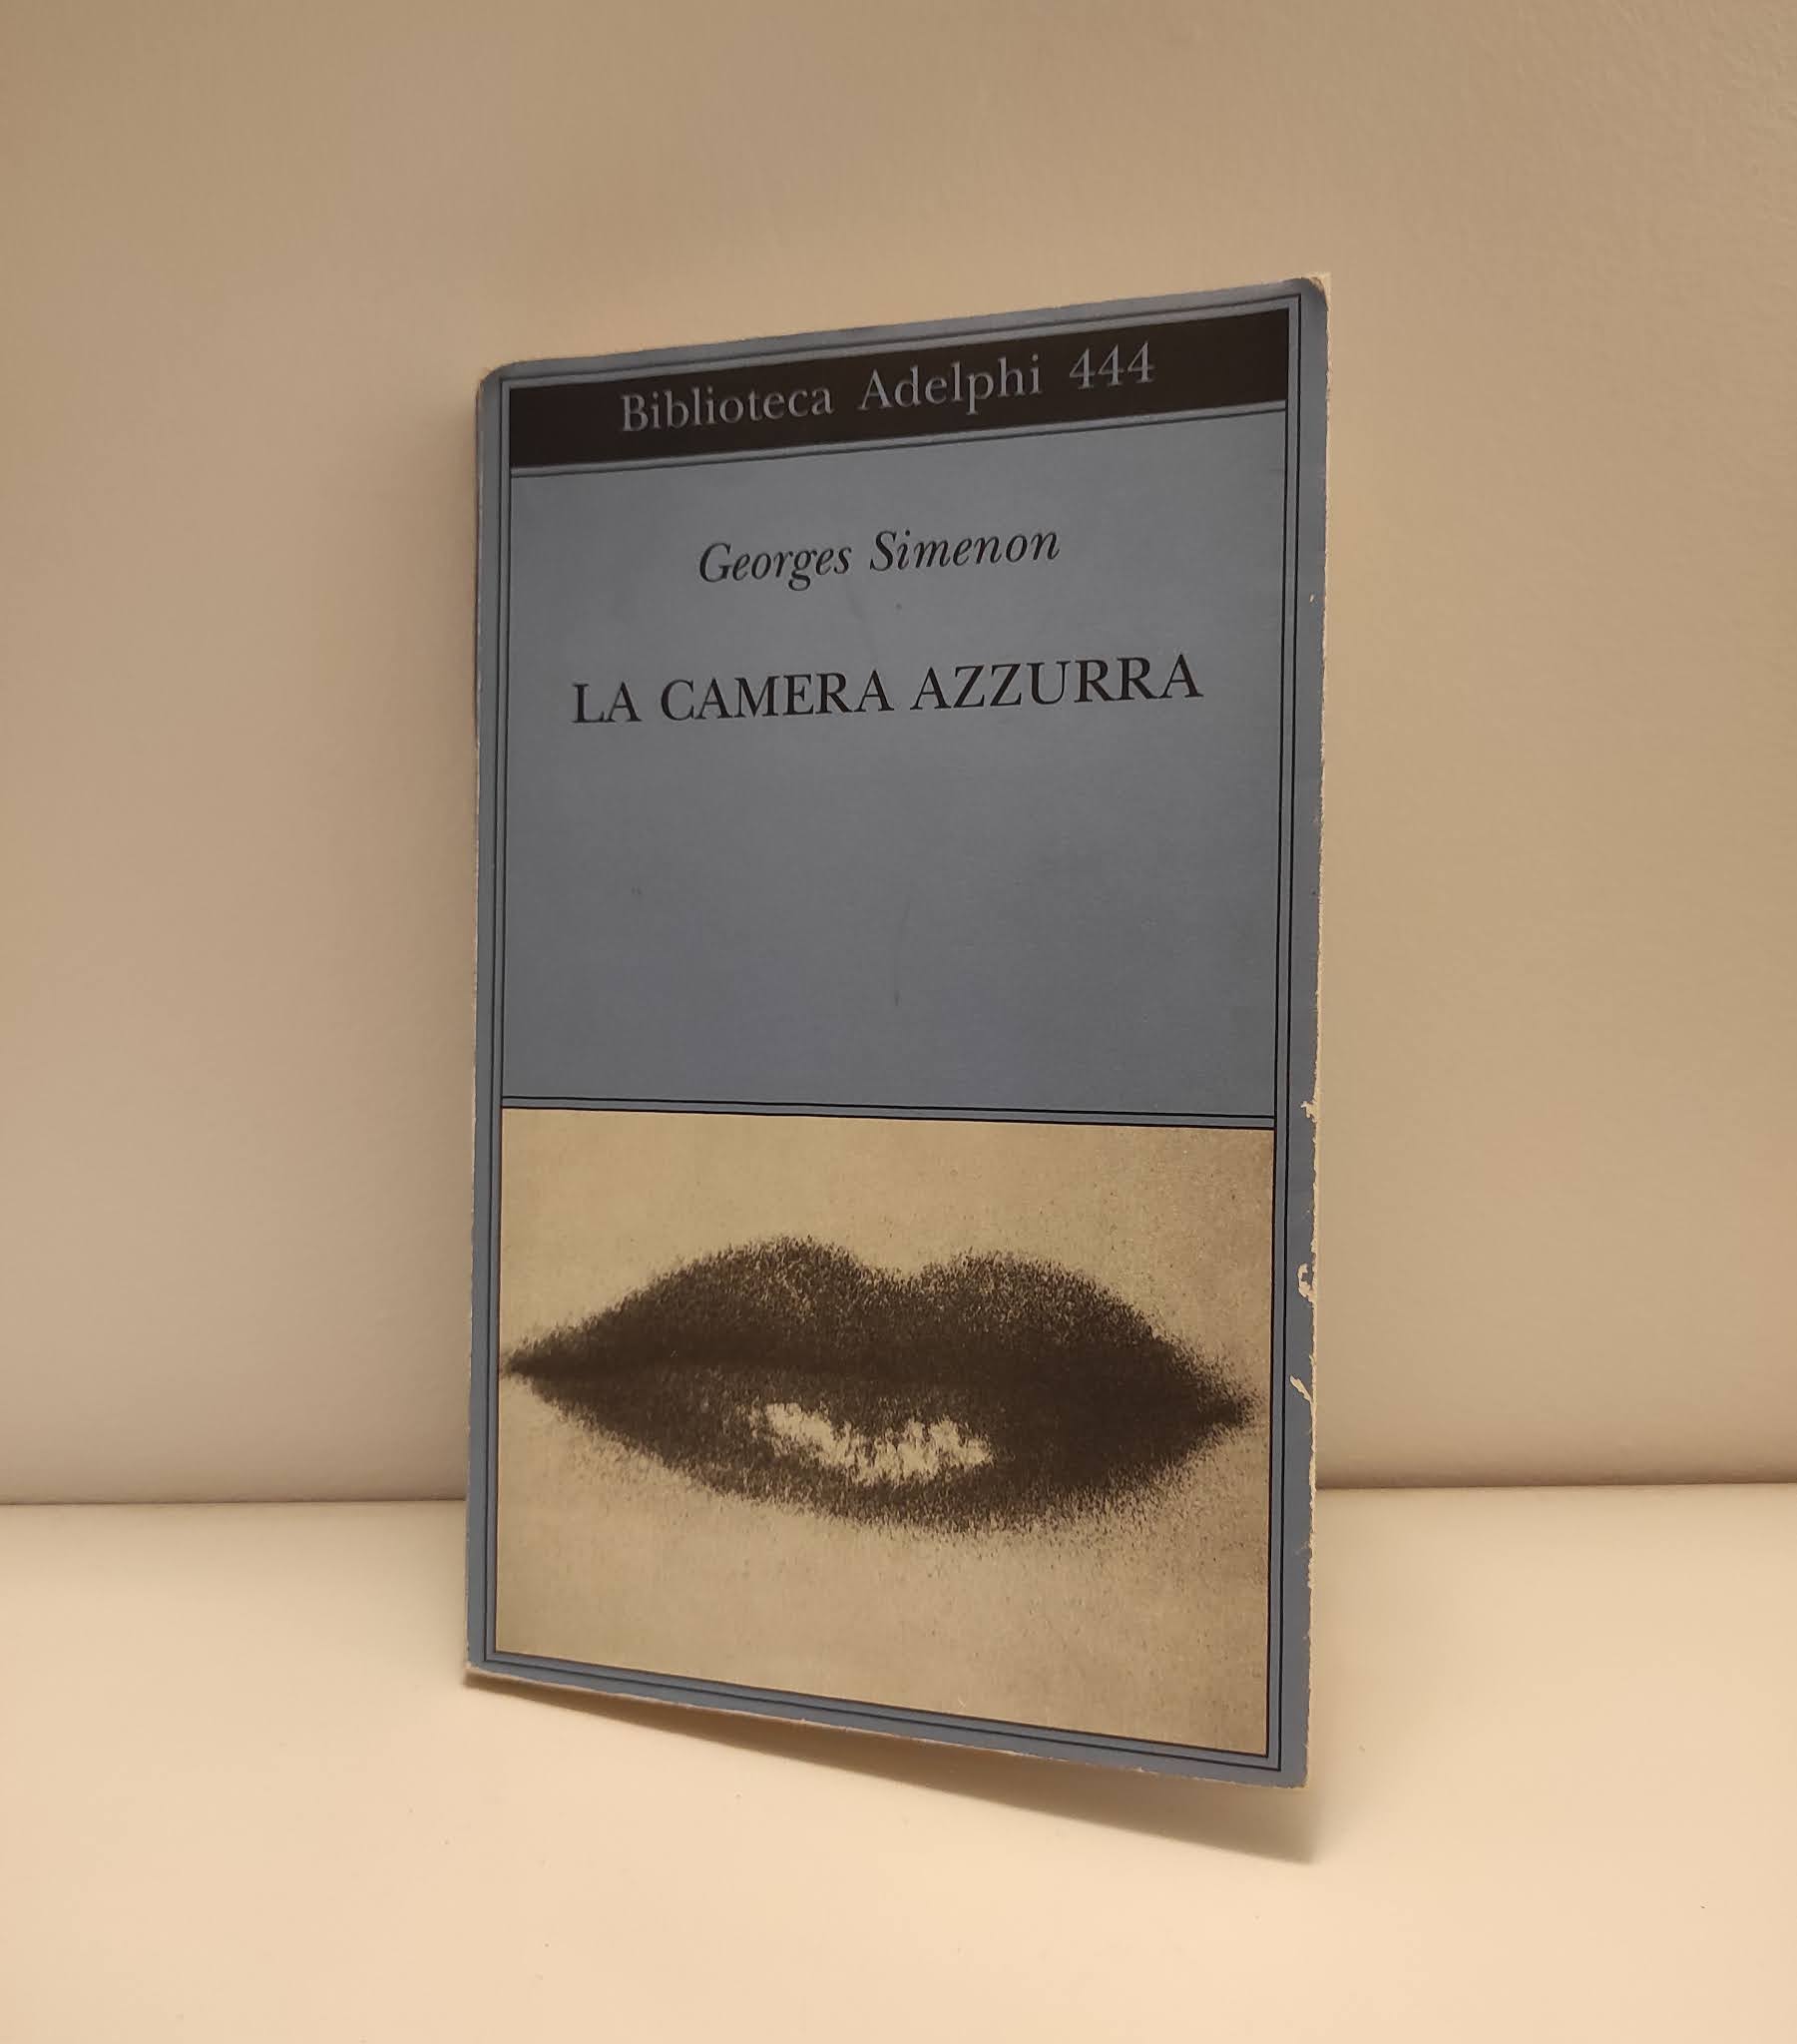 Sara Durantini: Un libro al giorno: Georges Simenon, La camera azzurra